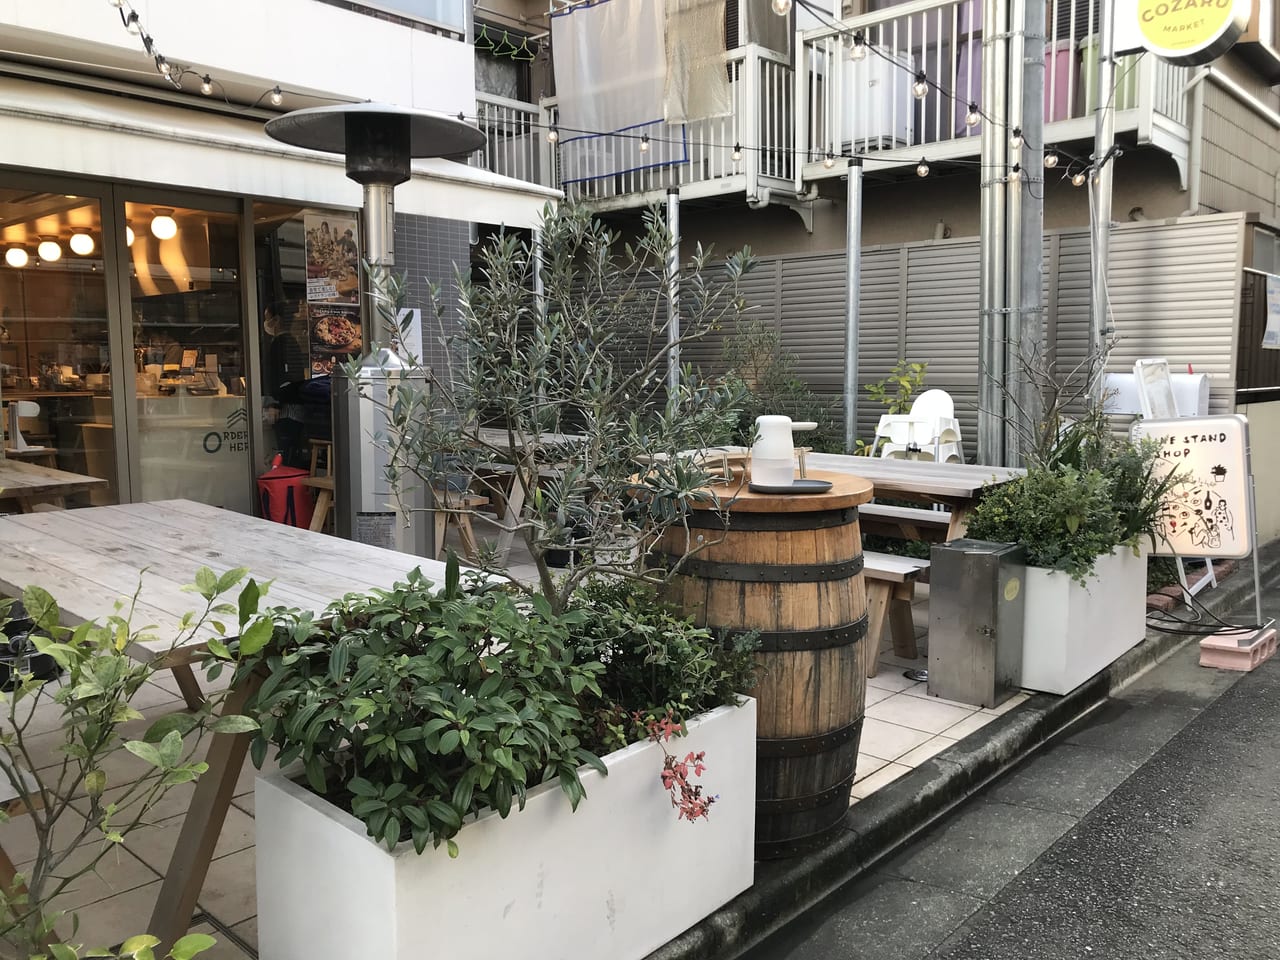 世田谷区尾山台にあるビストロ「COSARU」イートインもテイクアウトもできるレストランです。